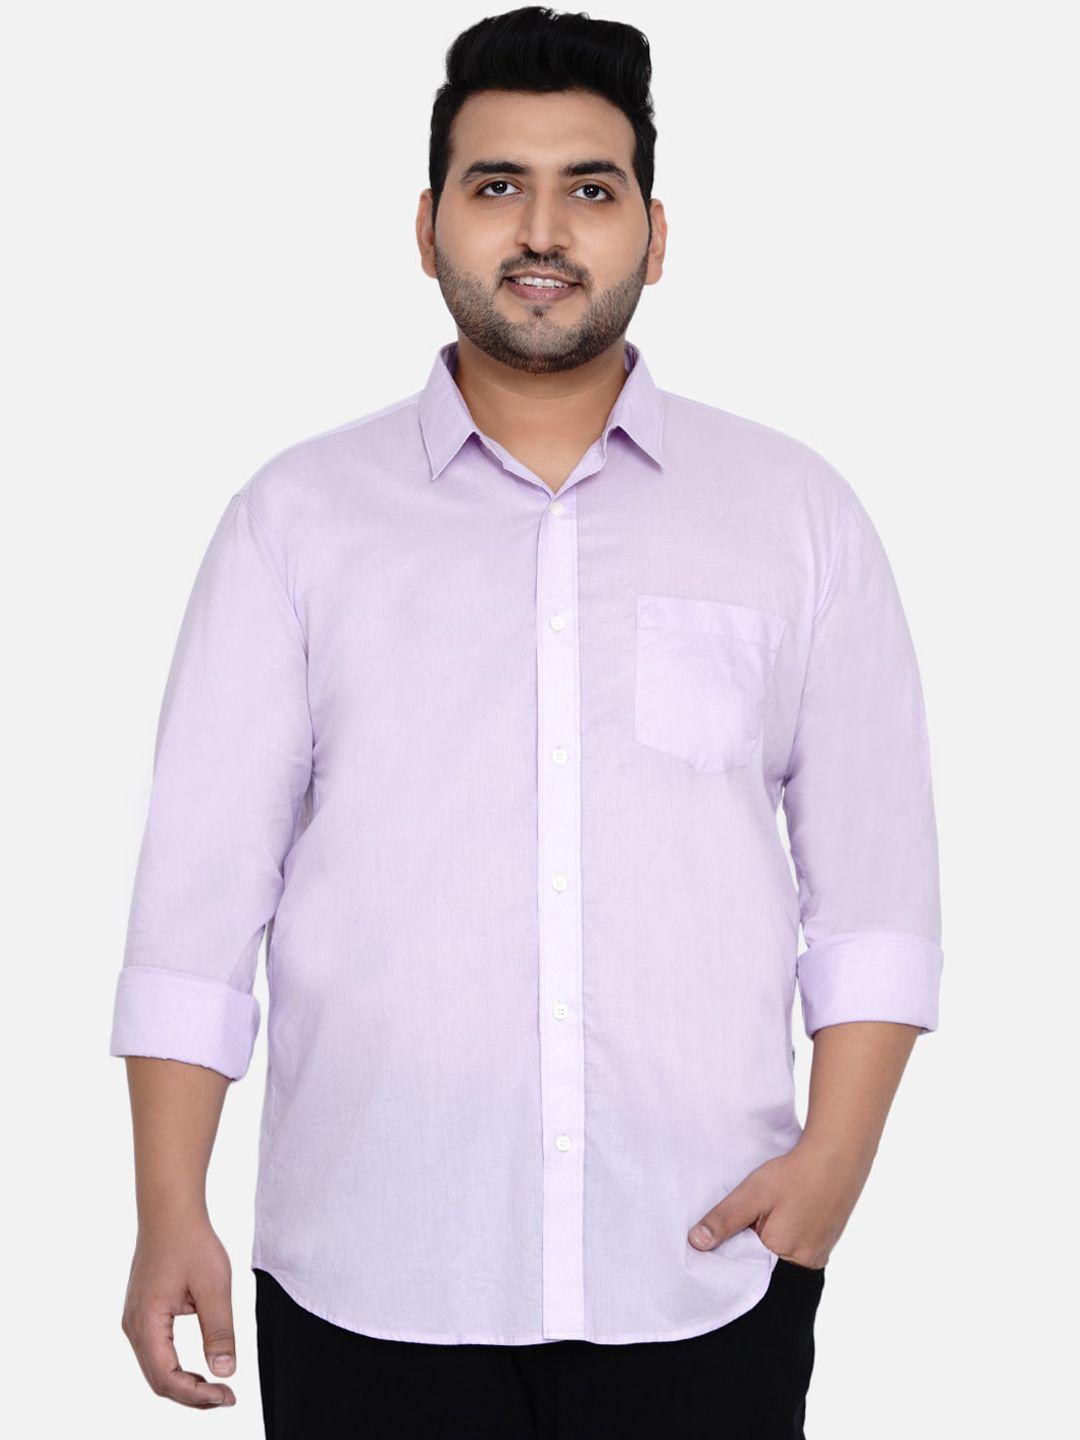 john-pride-men-lavender-opaque-plus-size-casual-shirt